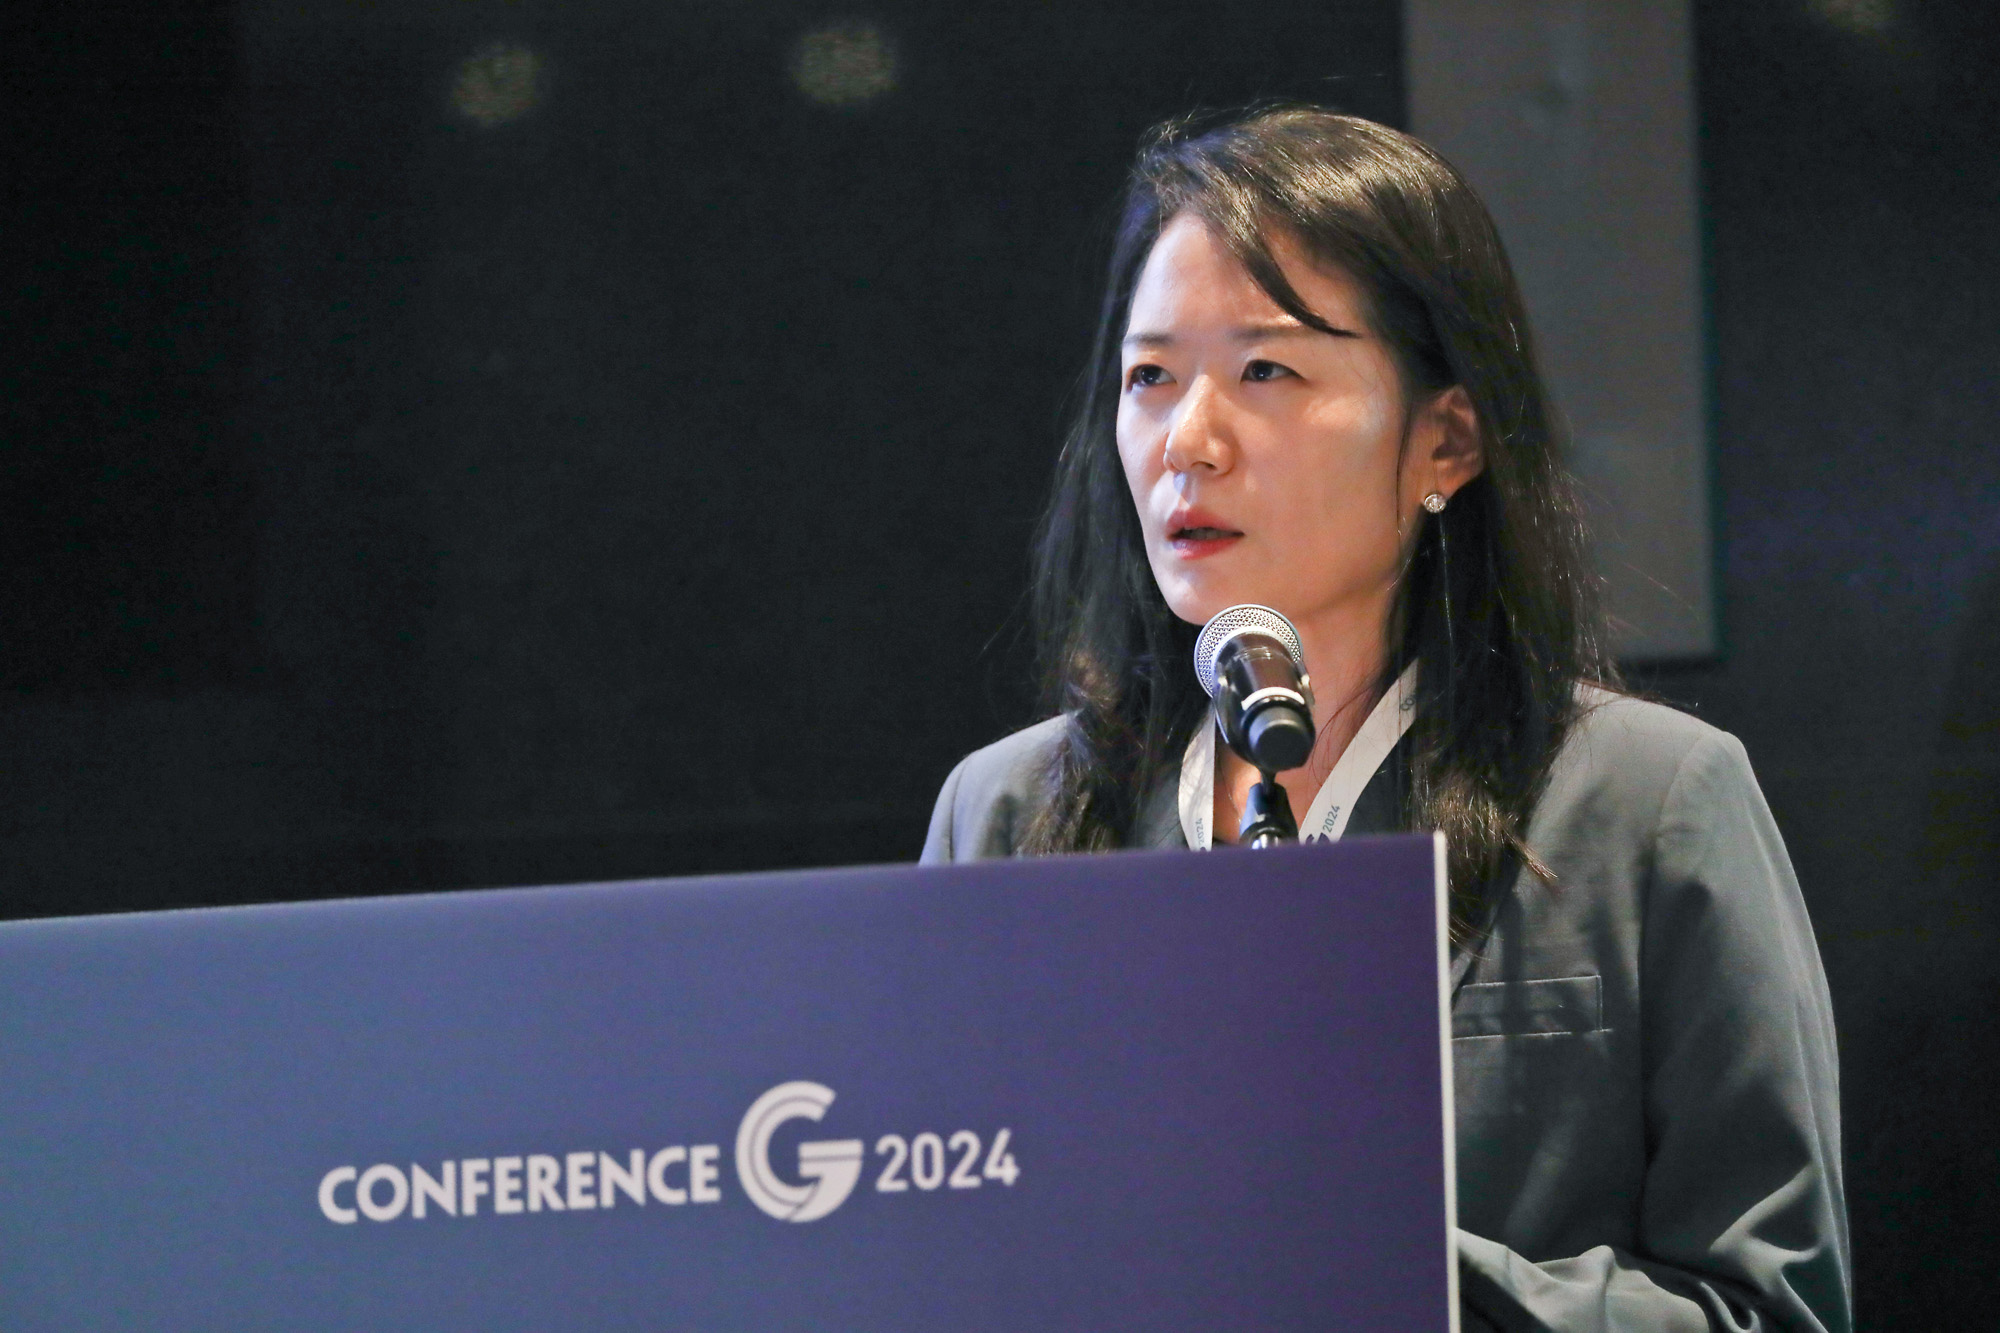 컨퍼런스G 2024;넥스트 차이나 한국의 선택